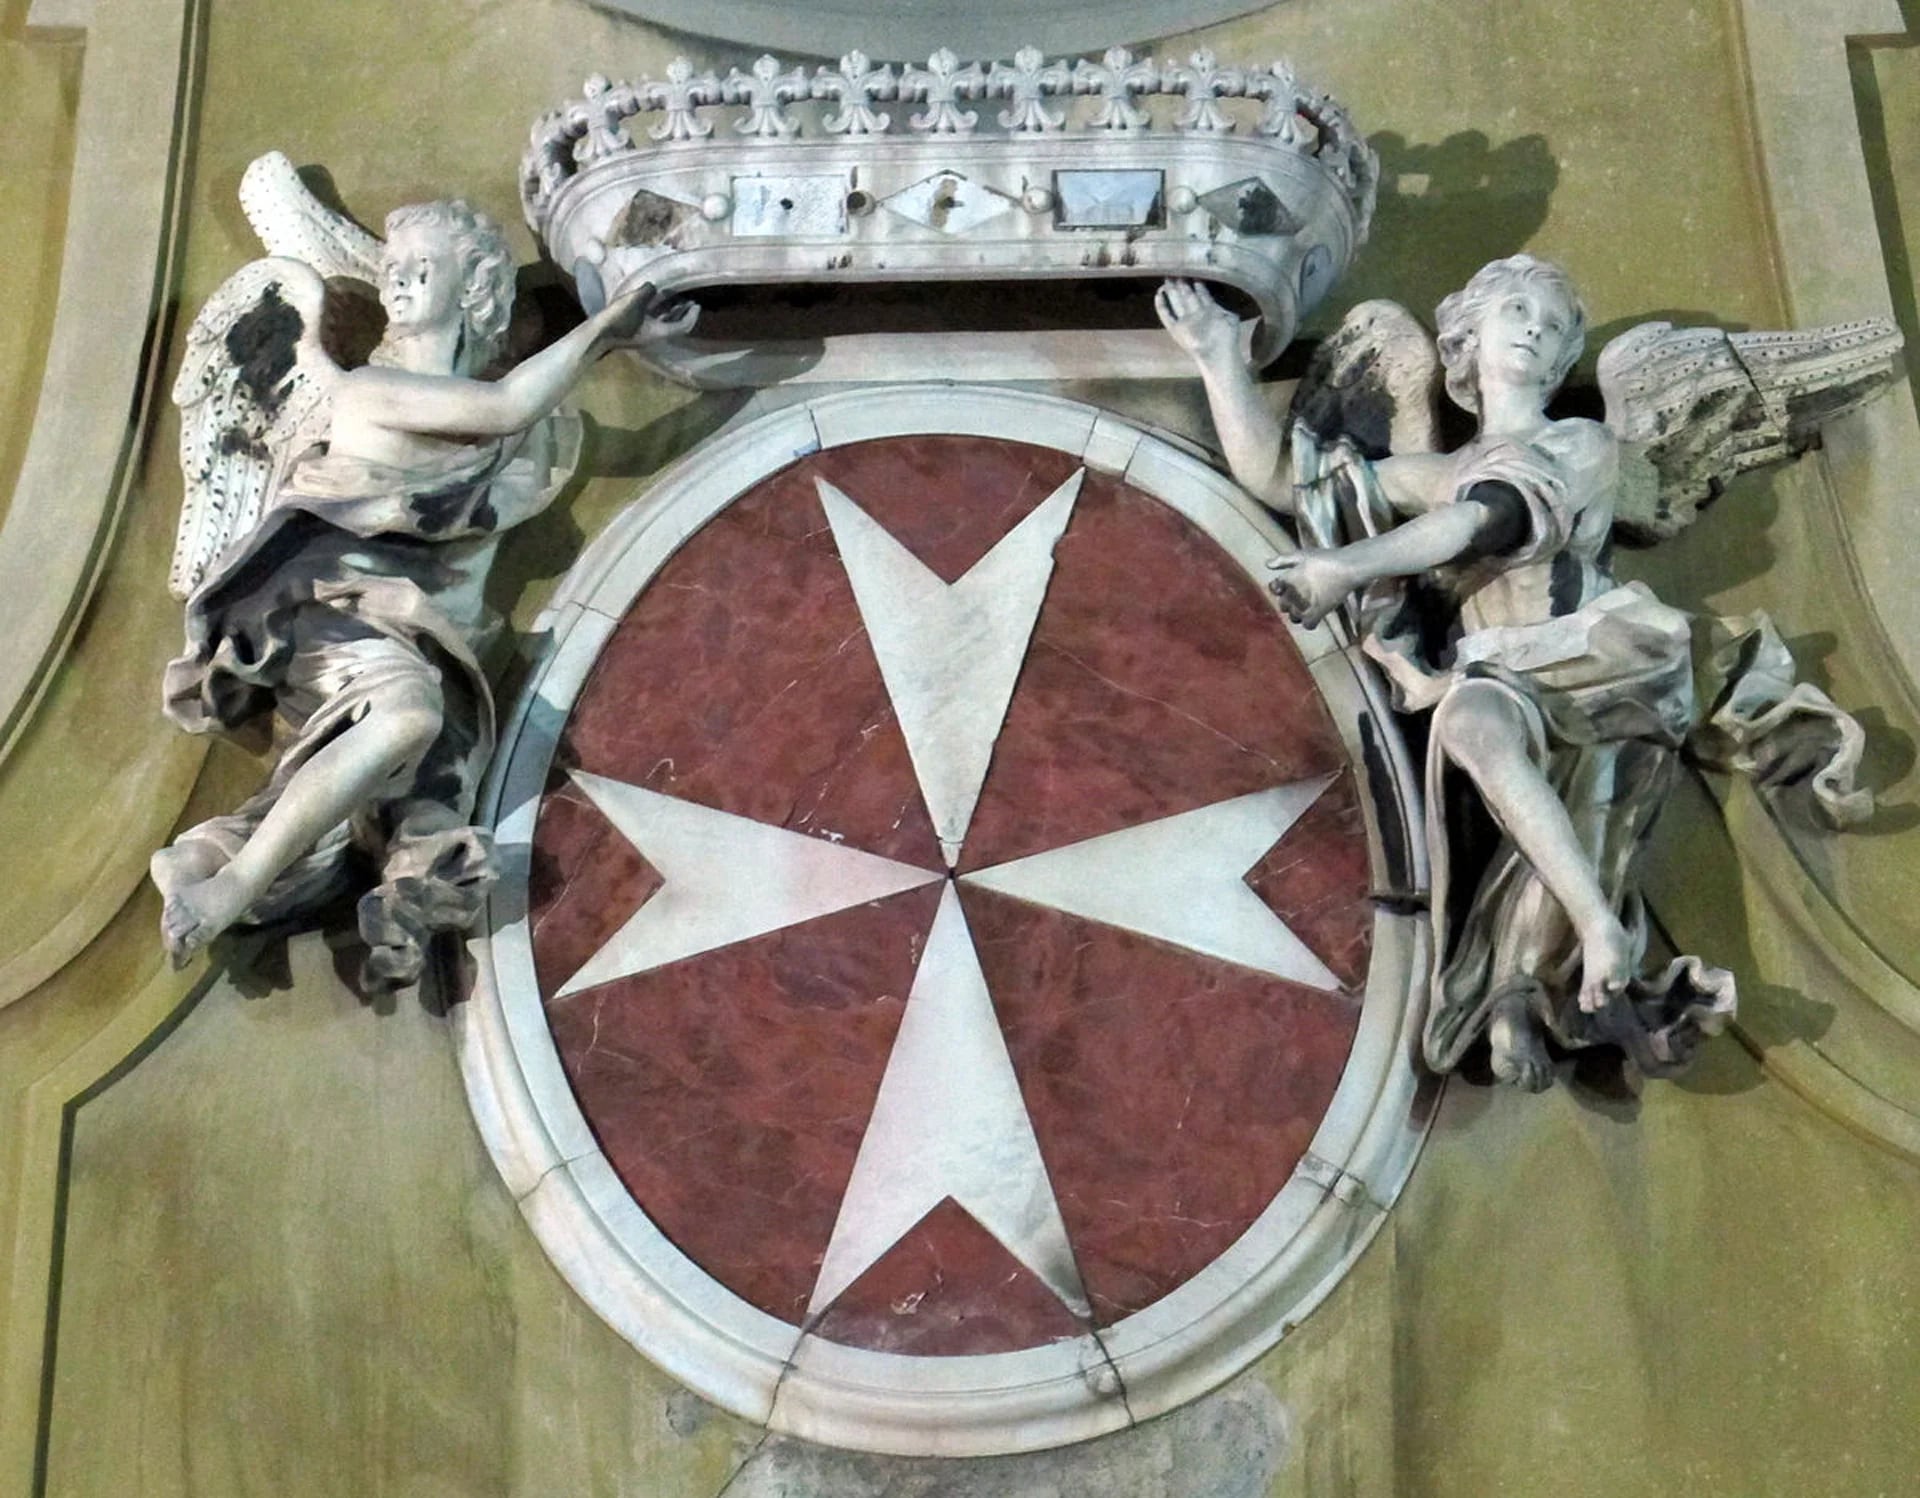 Escudo de la Orden de Malta, orden religiosa que por una disposición del Papa Pascual II hace actos de caridad y asistencia social de los peregrinos y del territorio cristiano a nivel mundial